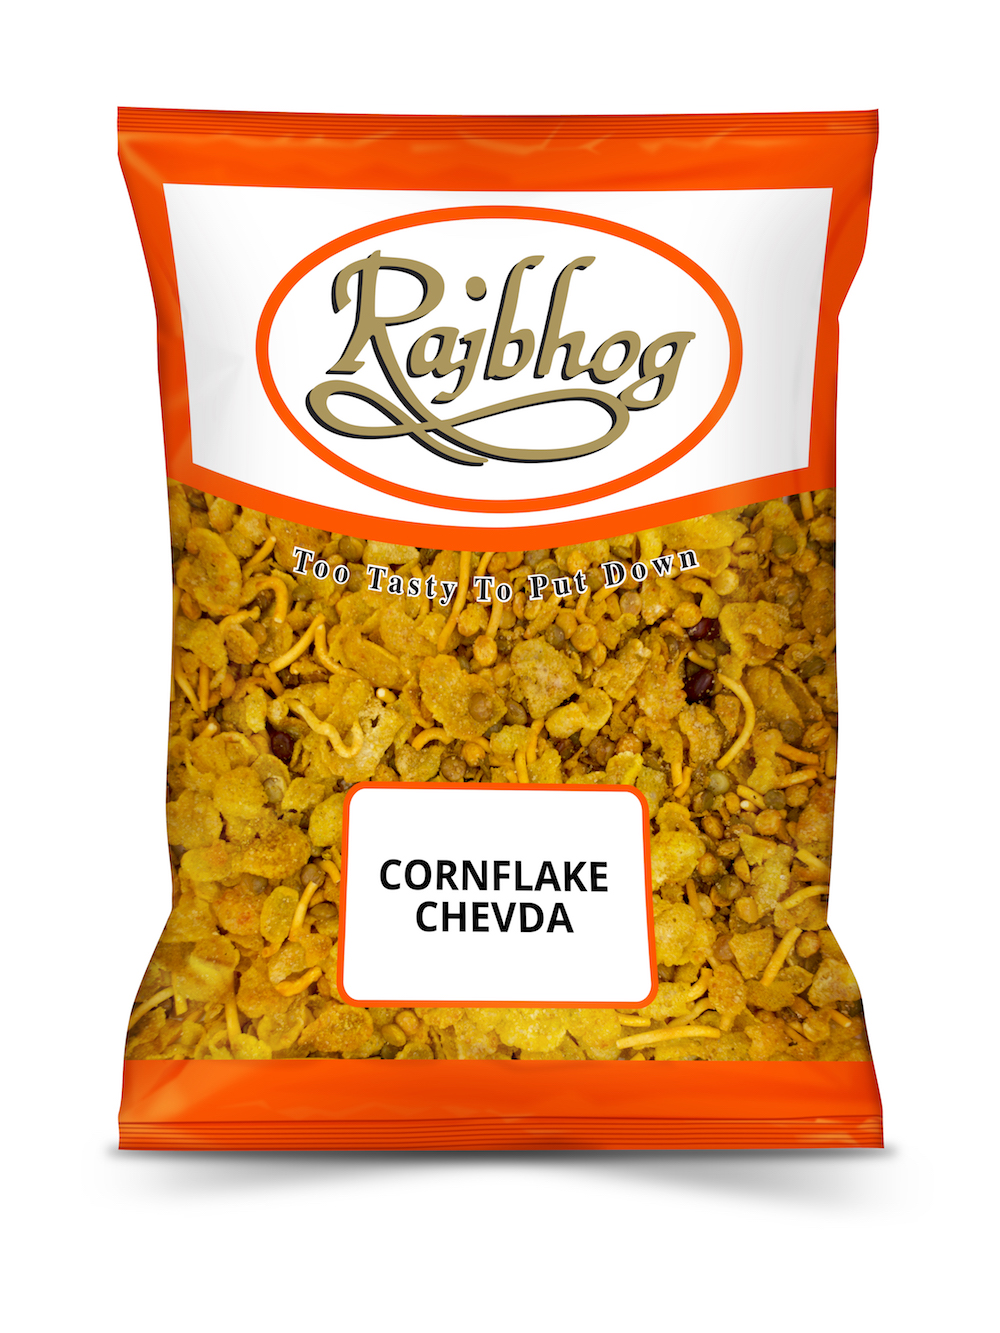 Cornflake Chevda